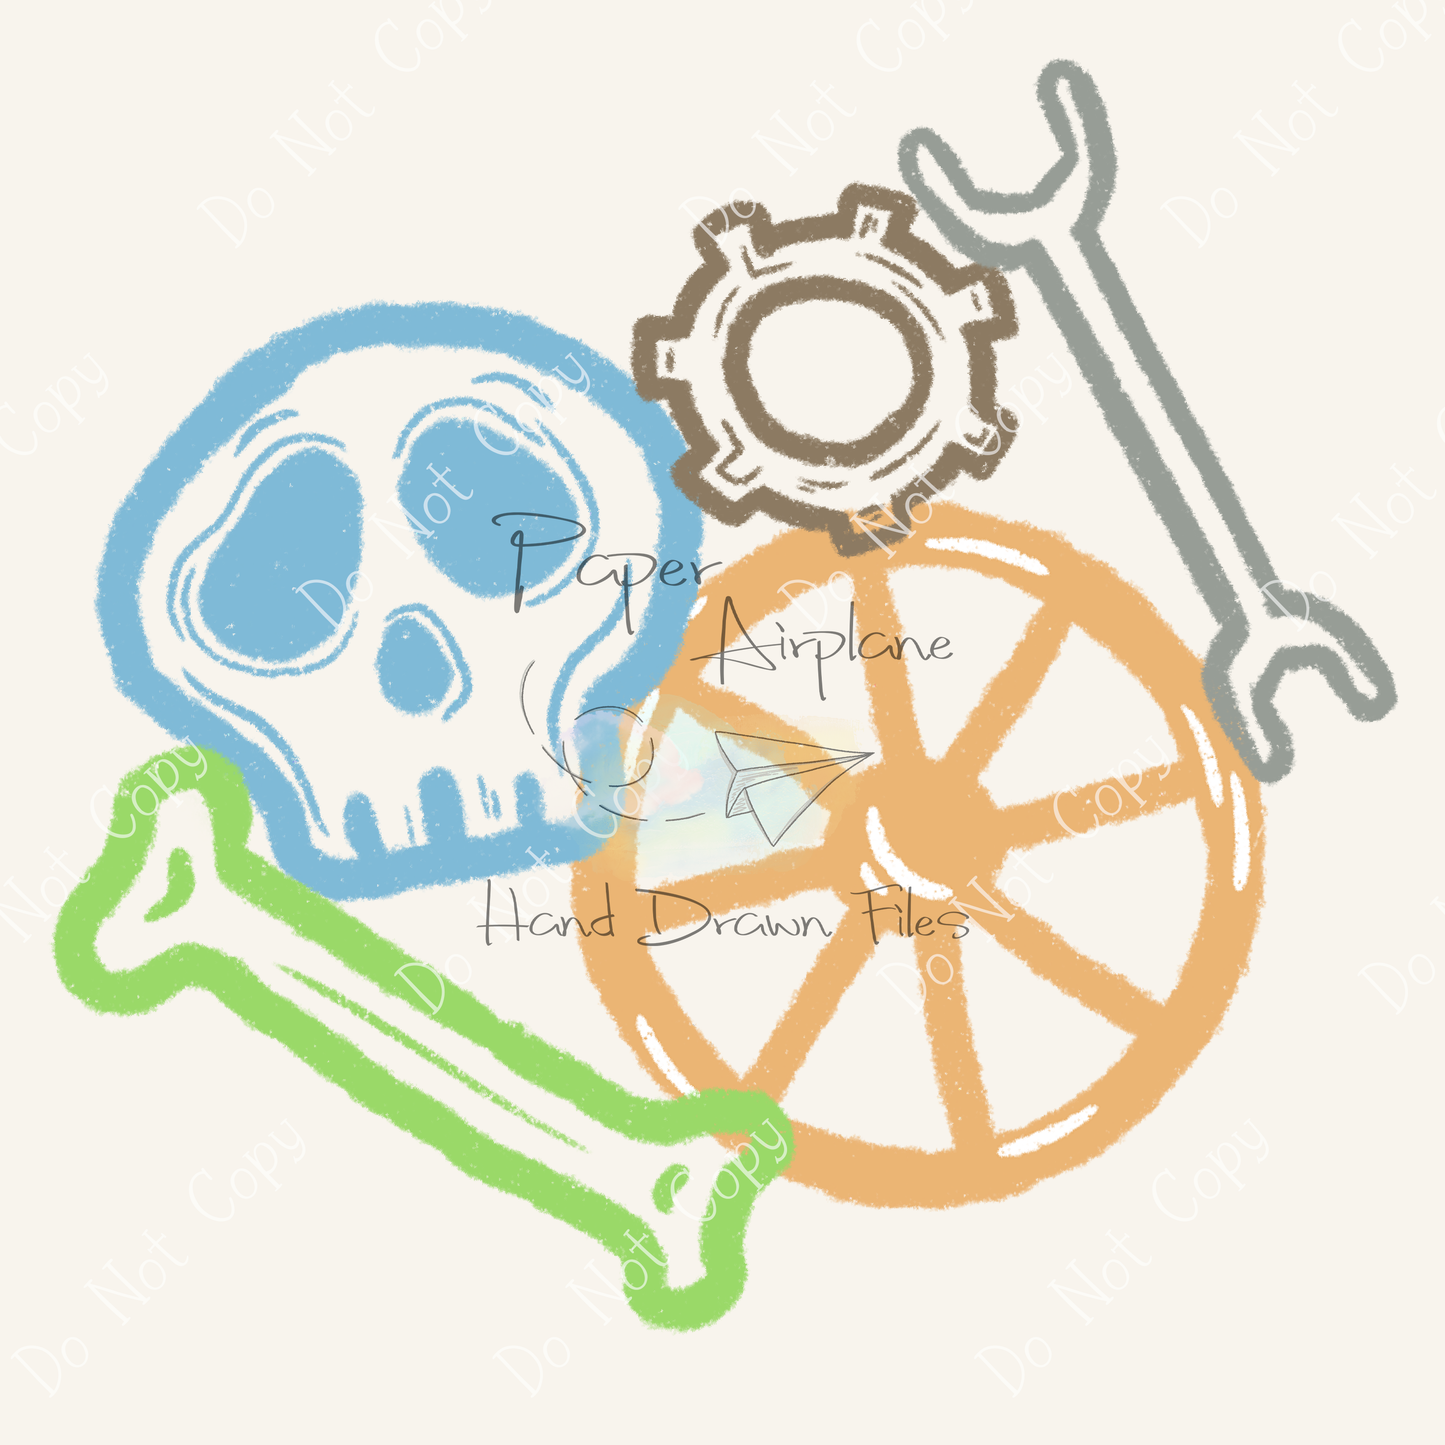 Skull Tools